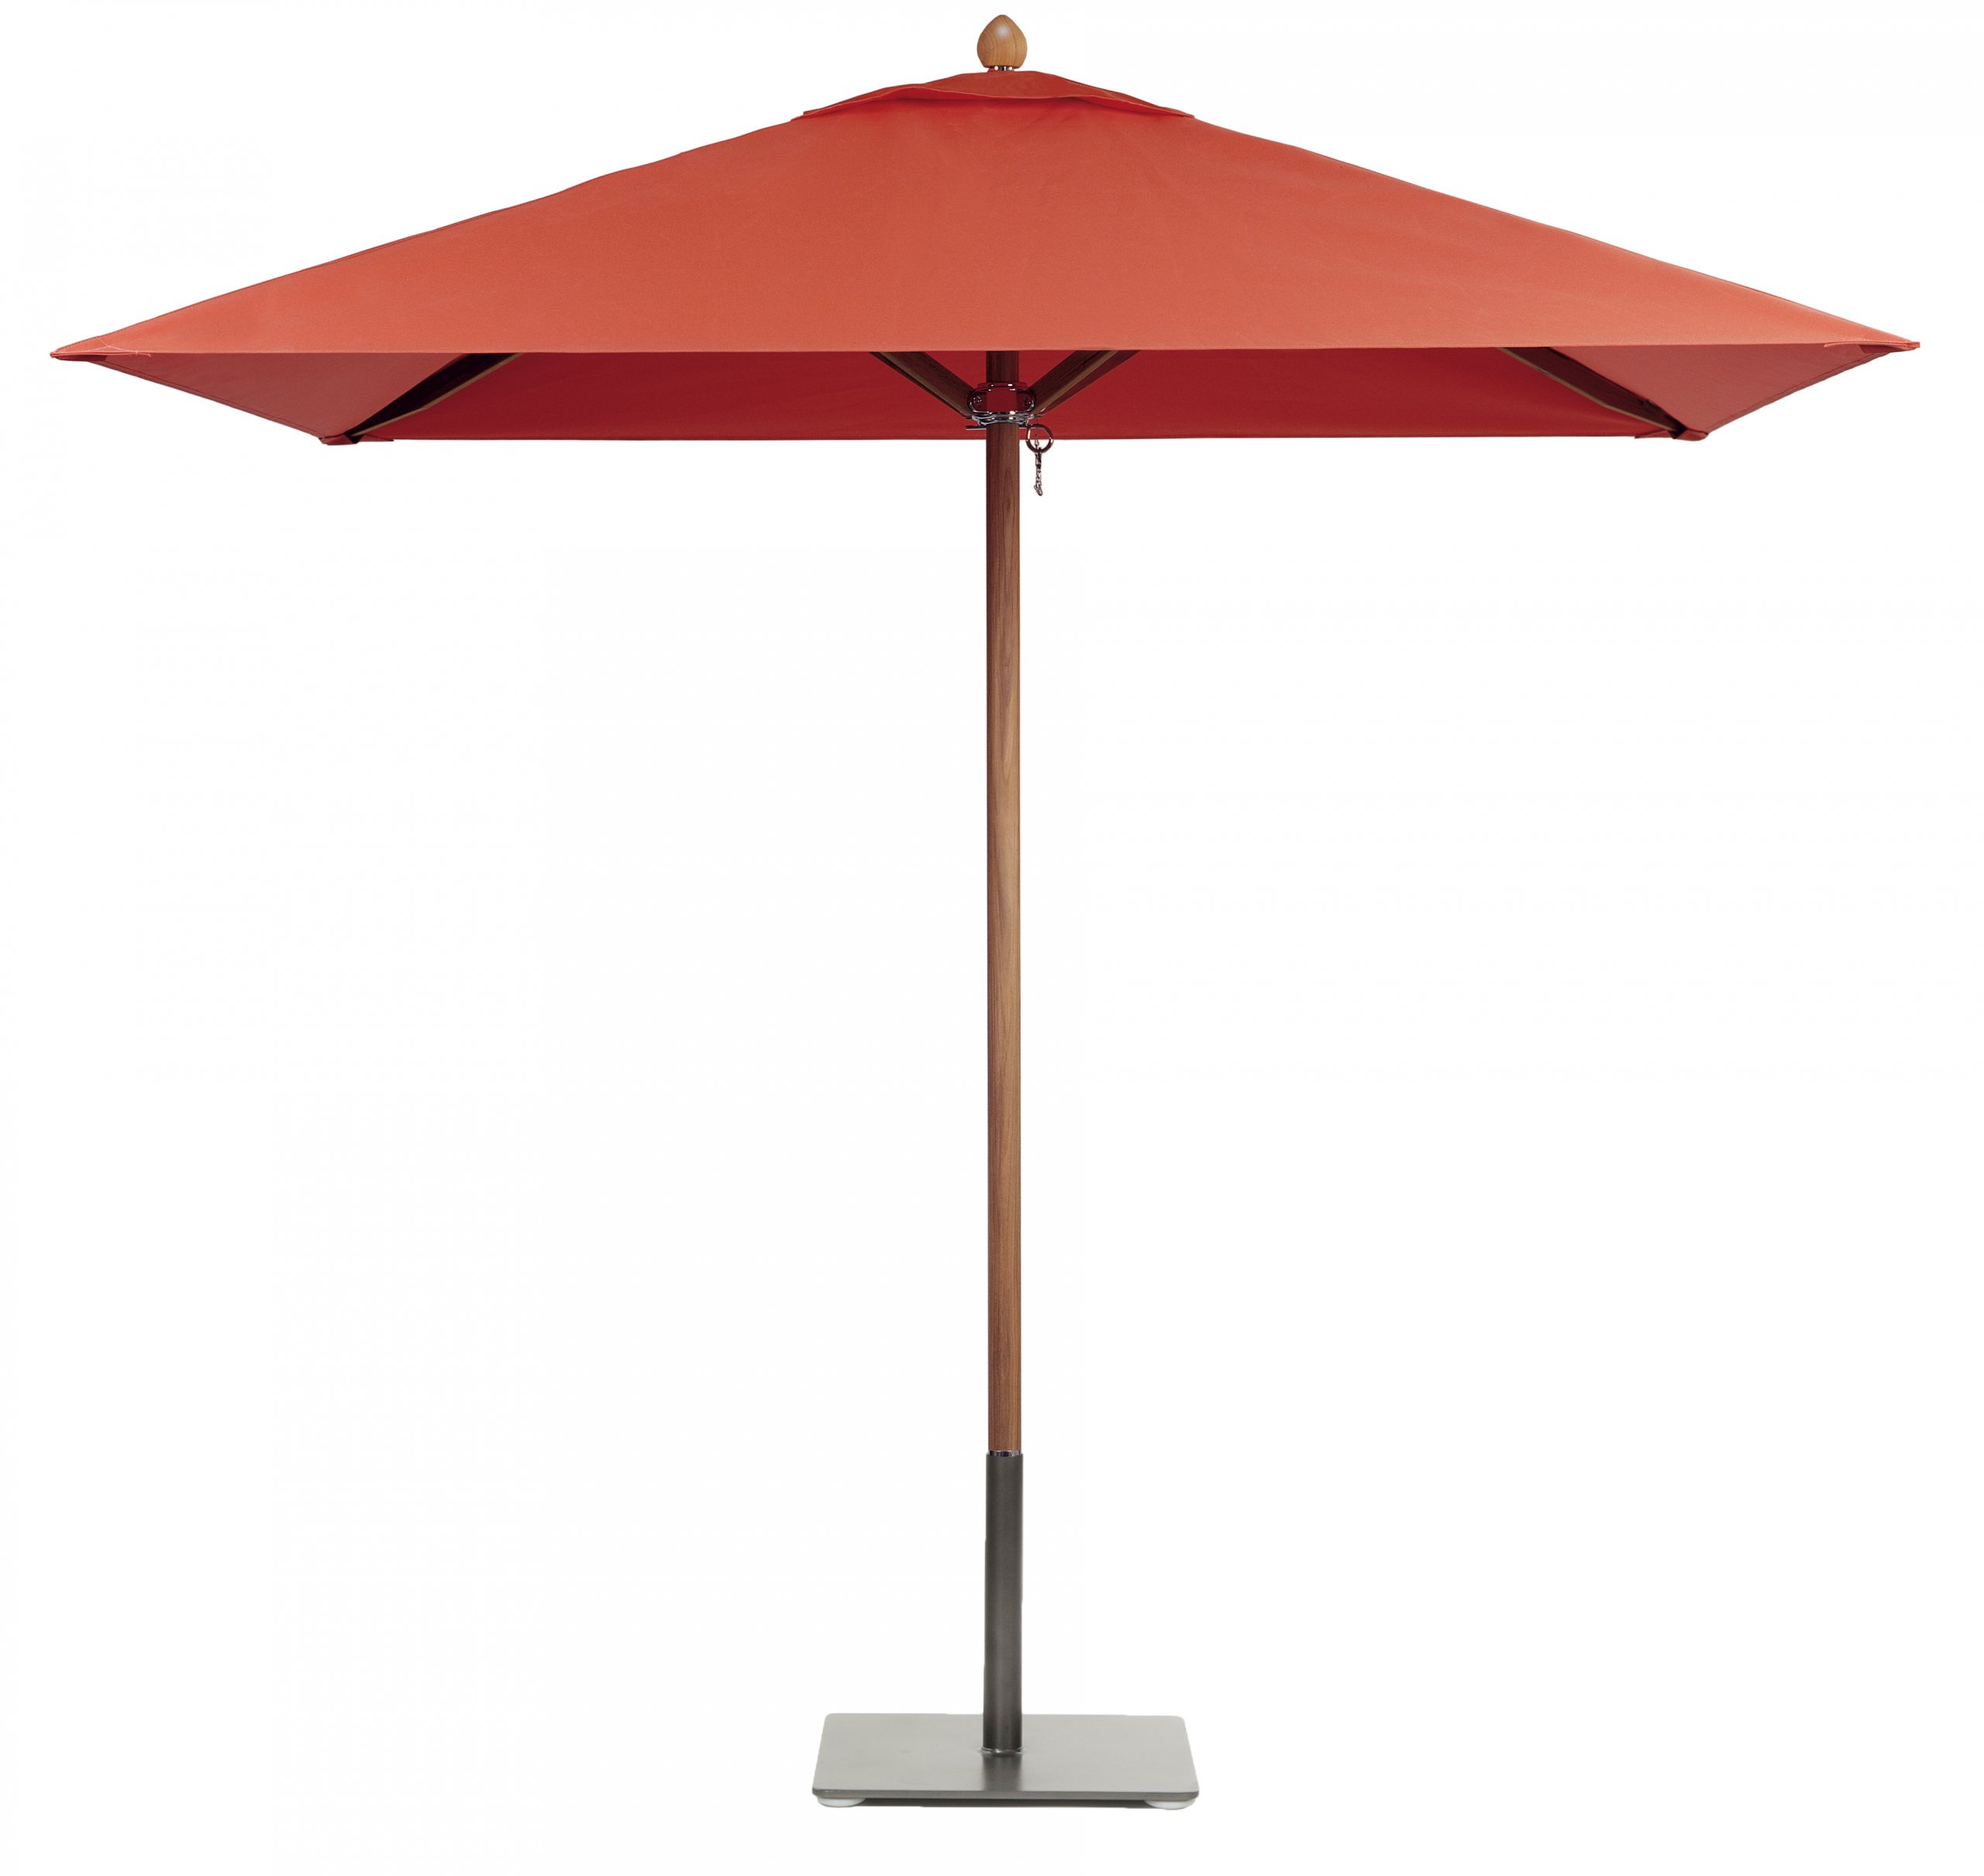 Image of Riviera teak umbrella